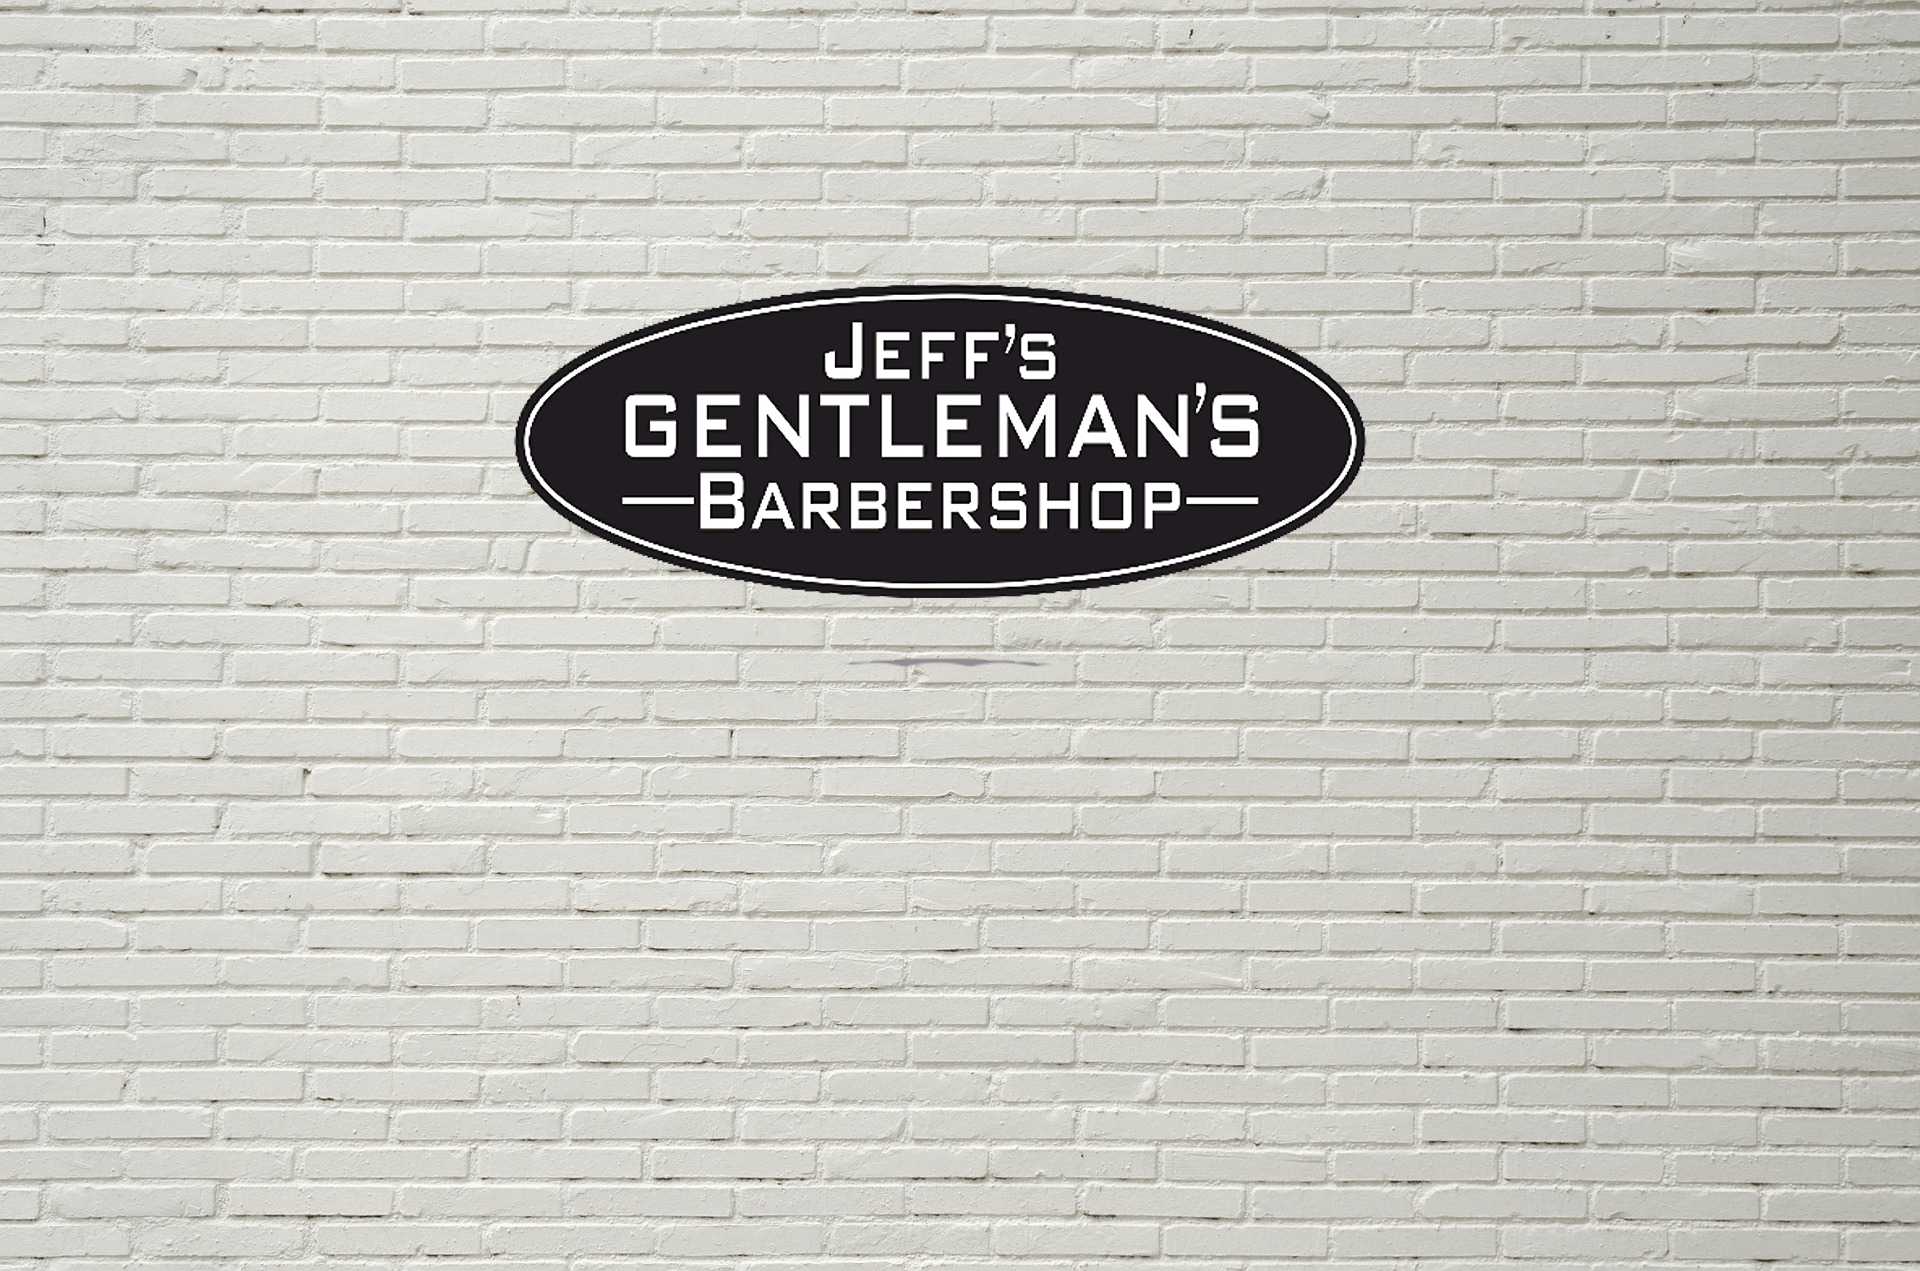 Jeff's Gentleman's Barbershop